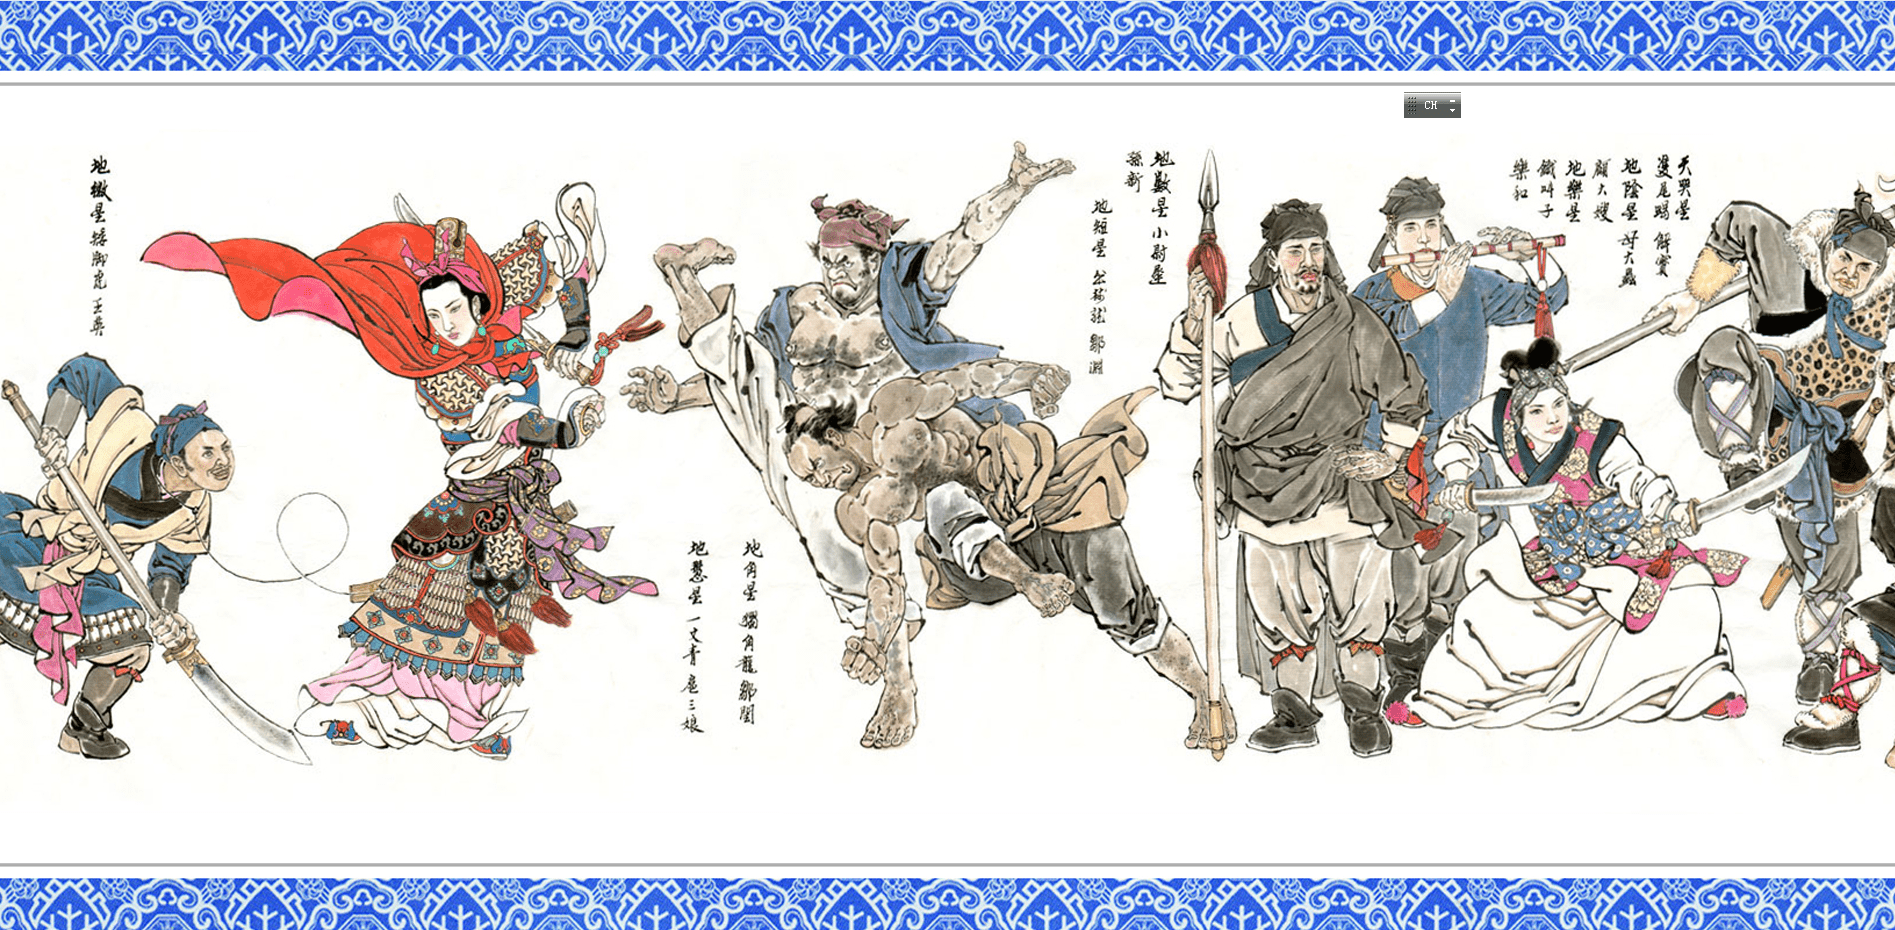 《水浒》一百零八好汉的人物插画,你觉得形象吗?